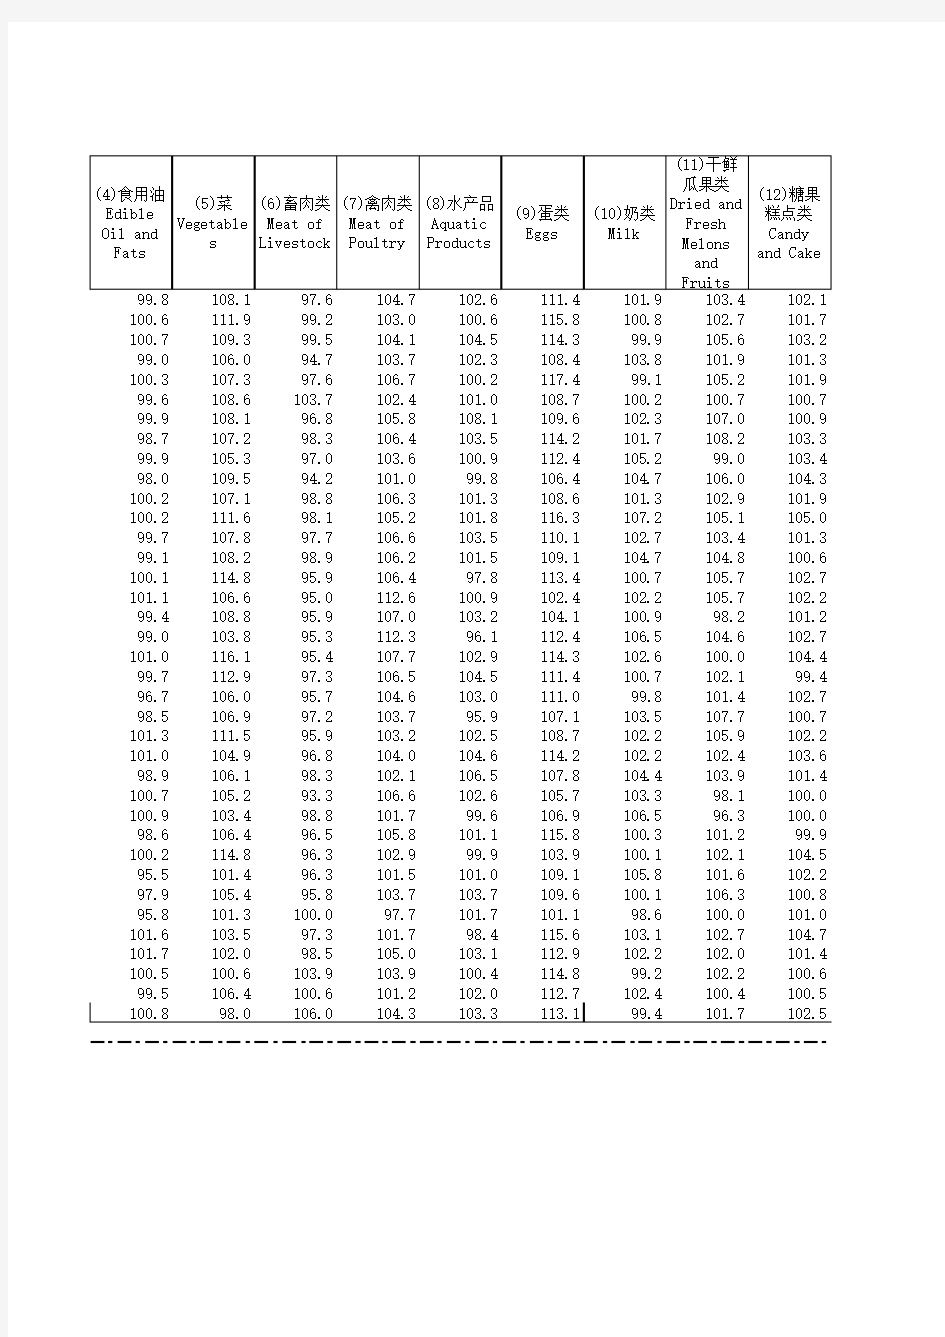 中国价格统计年鉴全国各省市区数据：3-4-1 36城市居民消费价格指数(2018年)